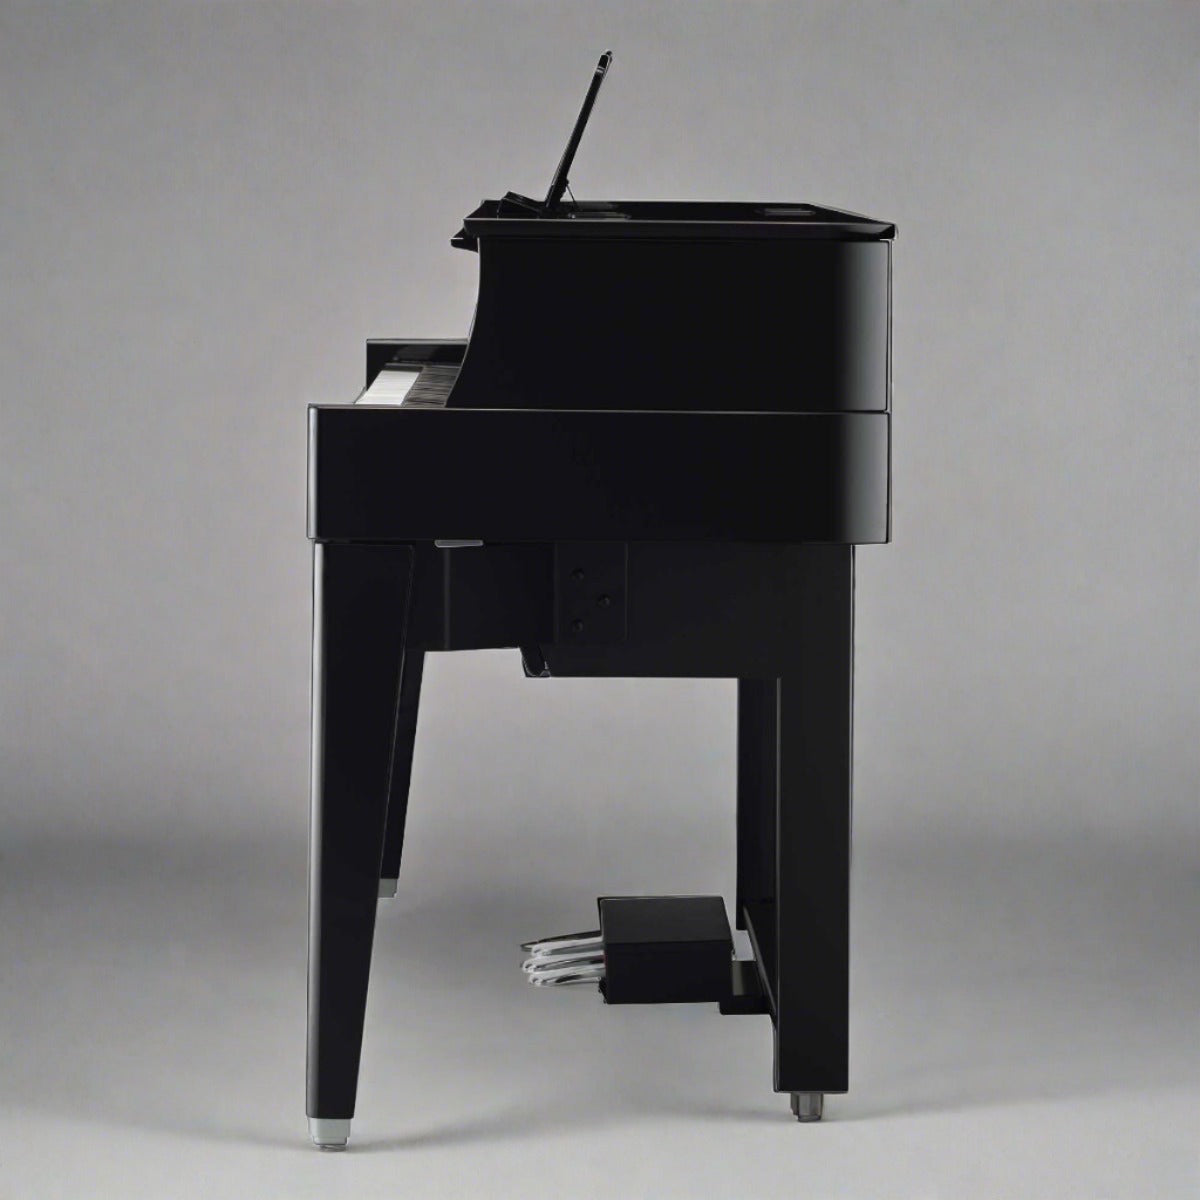 Yamaha N1X AvantGrand Piano | Yamaha N1X